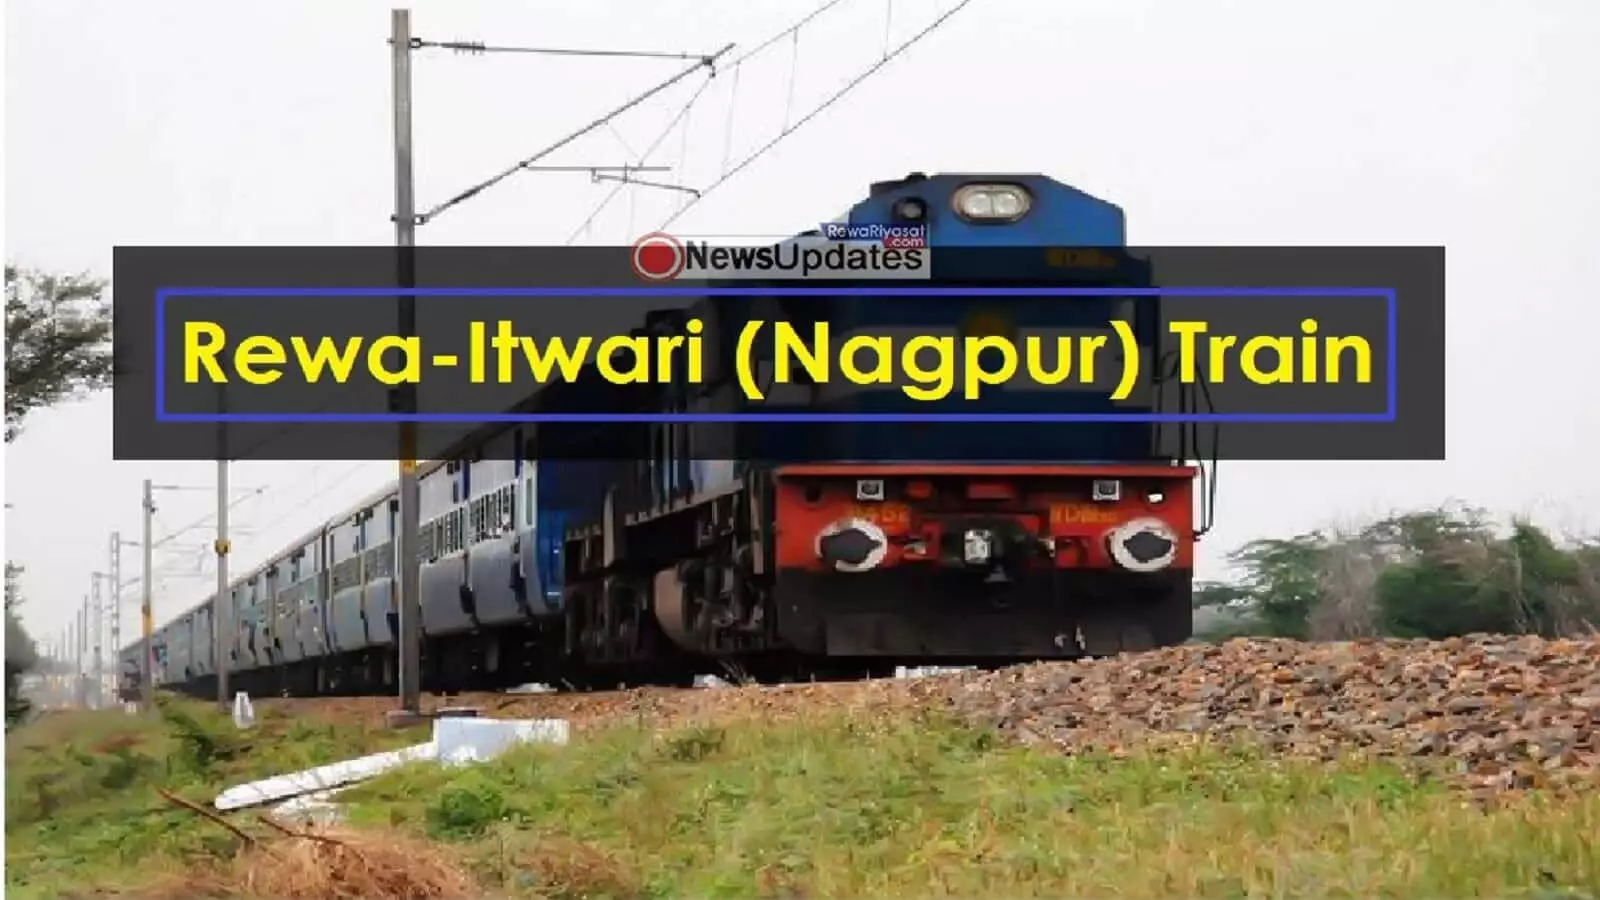 Rewa Itwari Express Train News